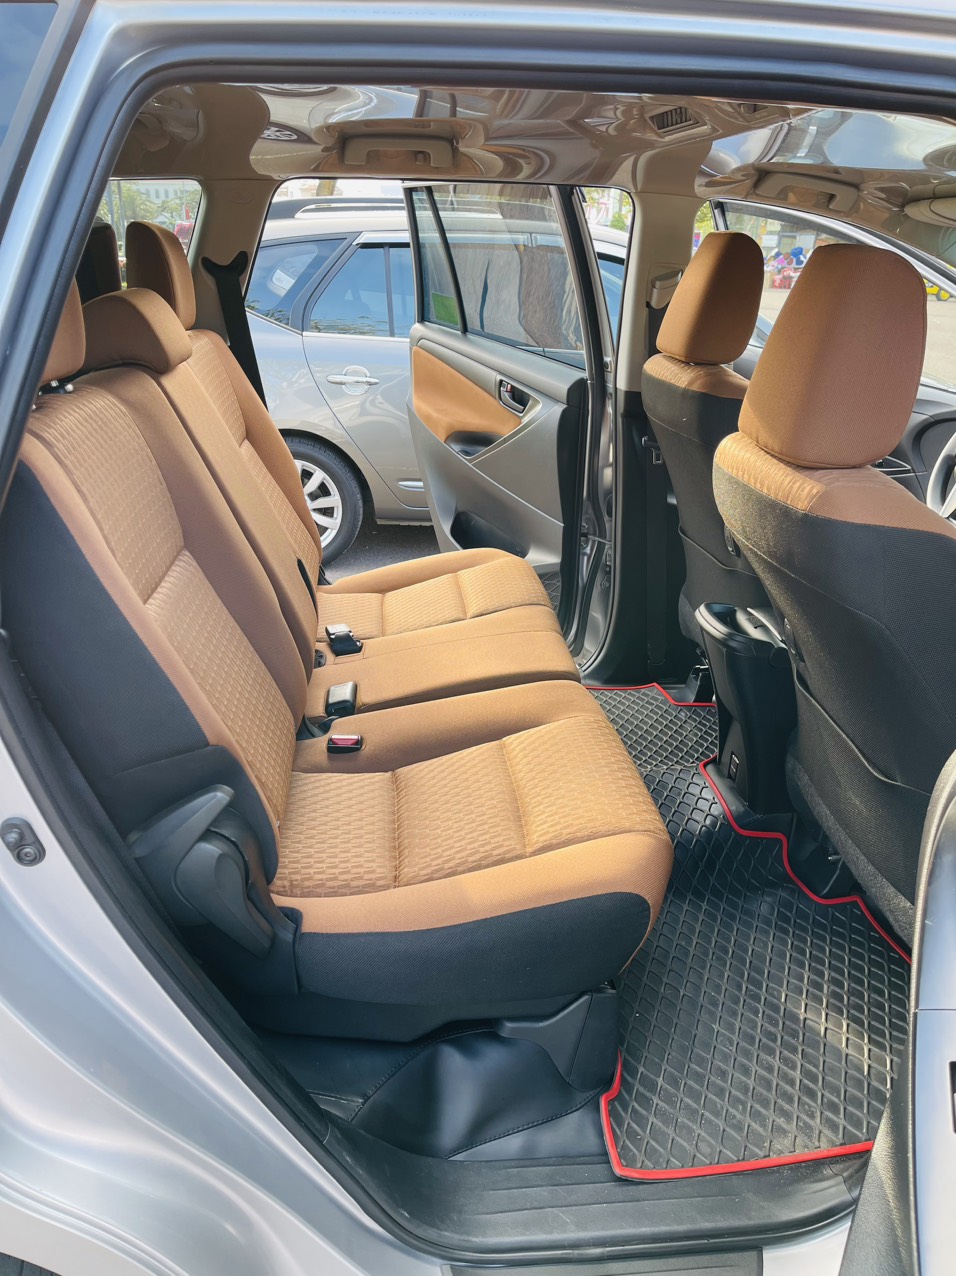 UUsed Car Dealer Trimap đang bán; Toyota Innova E 2.0 sx 2019, đăng ký 2020 một chủ mua mới đầu. -7